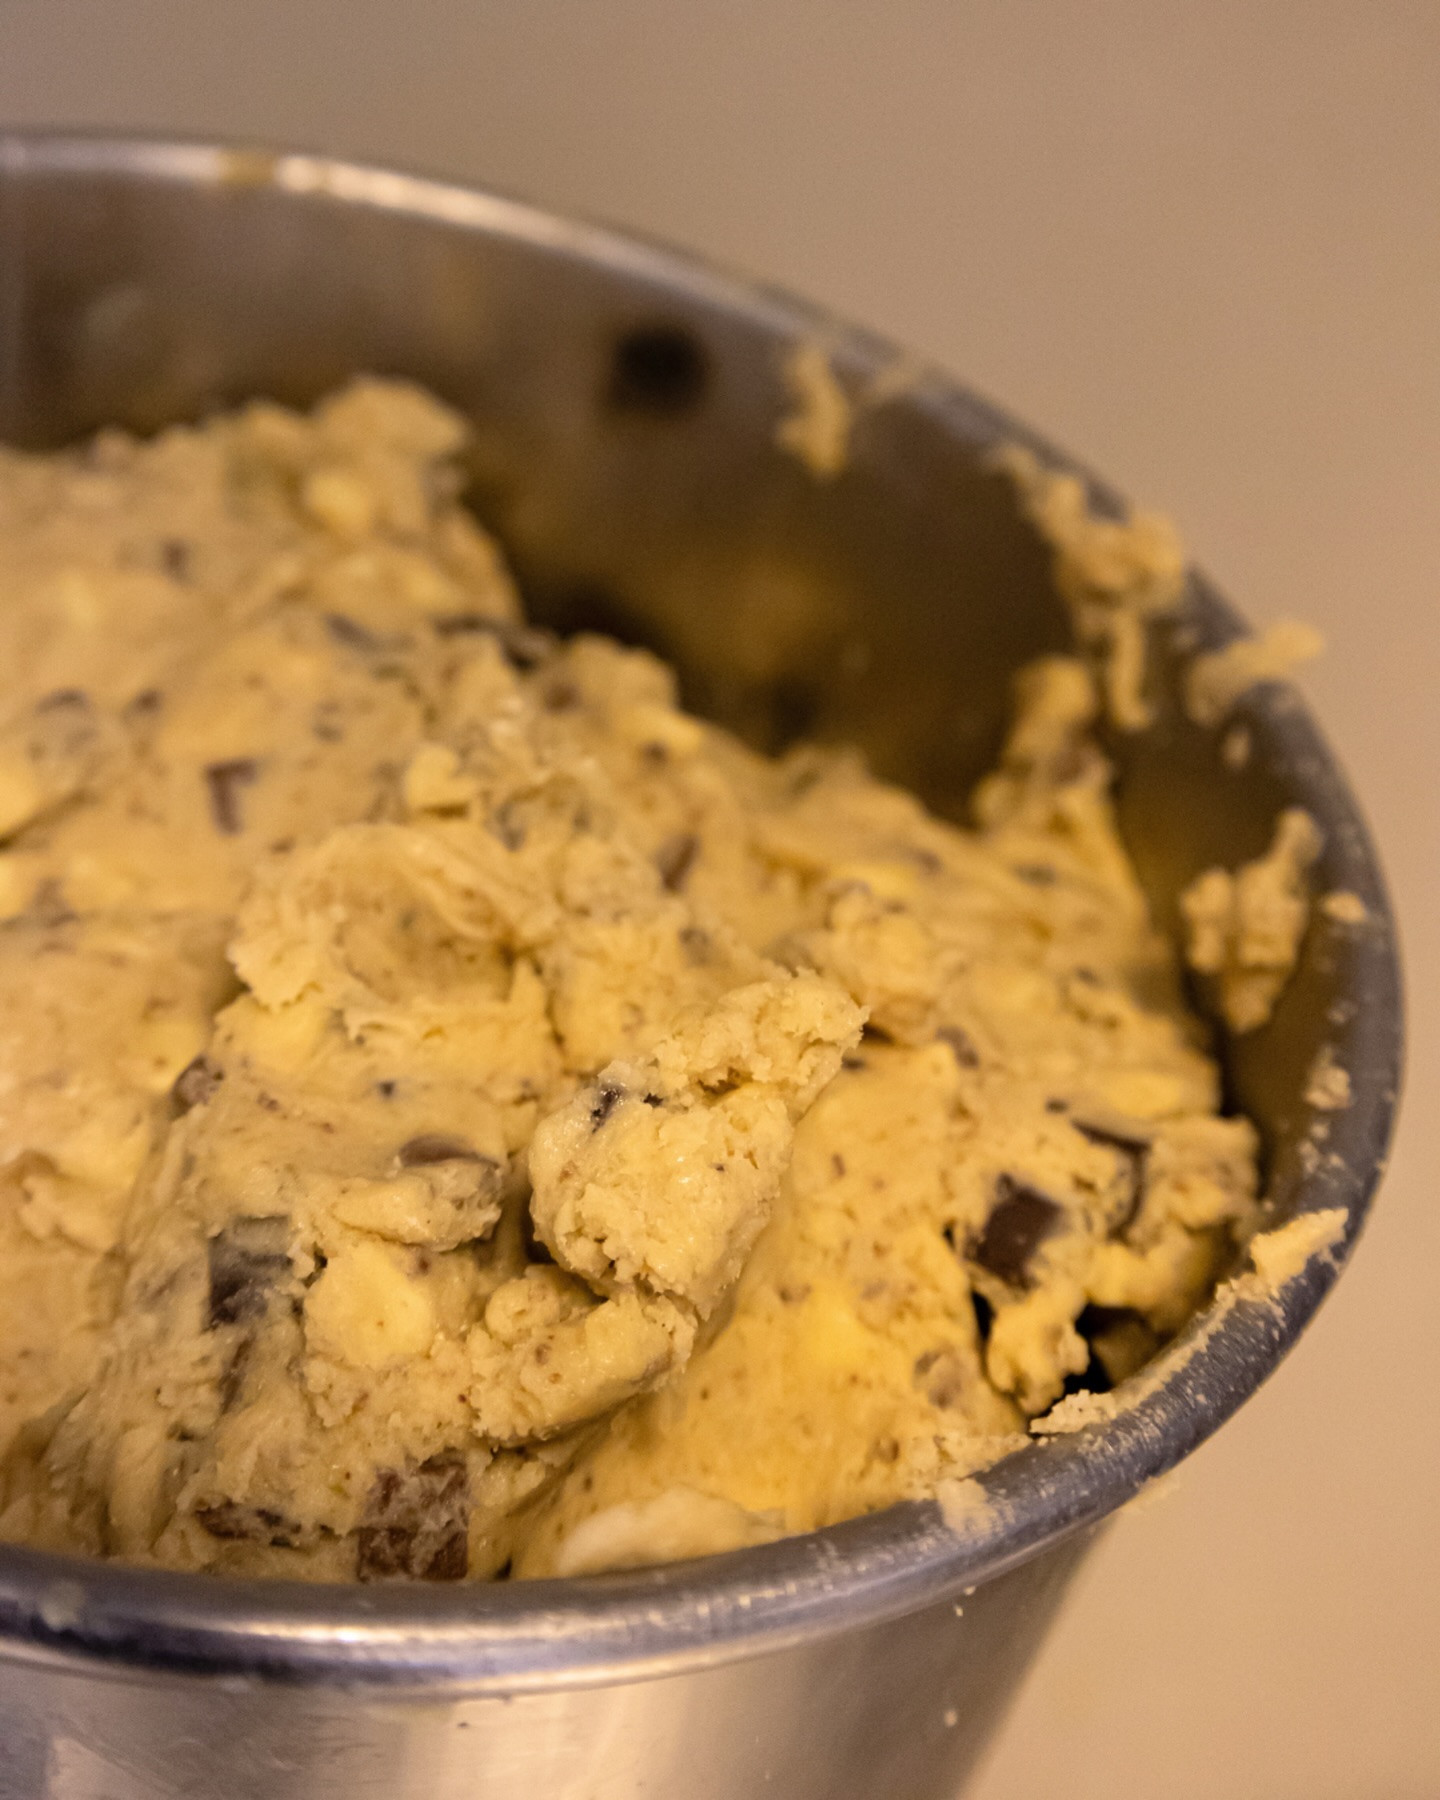 Juste un petit rappel, tous nos Cookies sont faits avec des produits frais ! 

INGRÉDIENTS DE QUALITÉ = COOKIES DE QUALITÉ 🥰

🍪 Faits maison à Gémenos (13)
📍Disponibles dans plusieurs points de vente
💌 Plus d’infos sur notre site web (lien dans notre bio)

#CookiesGiraudon #Bonheur #CookiesAvecAmour #GourmandiseAuthentique #homemadewithlove #CookiesArtisanaux #FaitAvecAmour #Gémenos #CuisineArtisanale #marseille #MadeInFrance